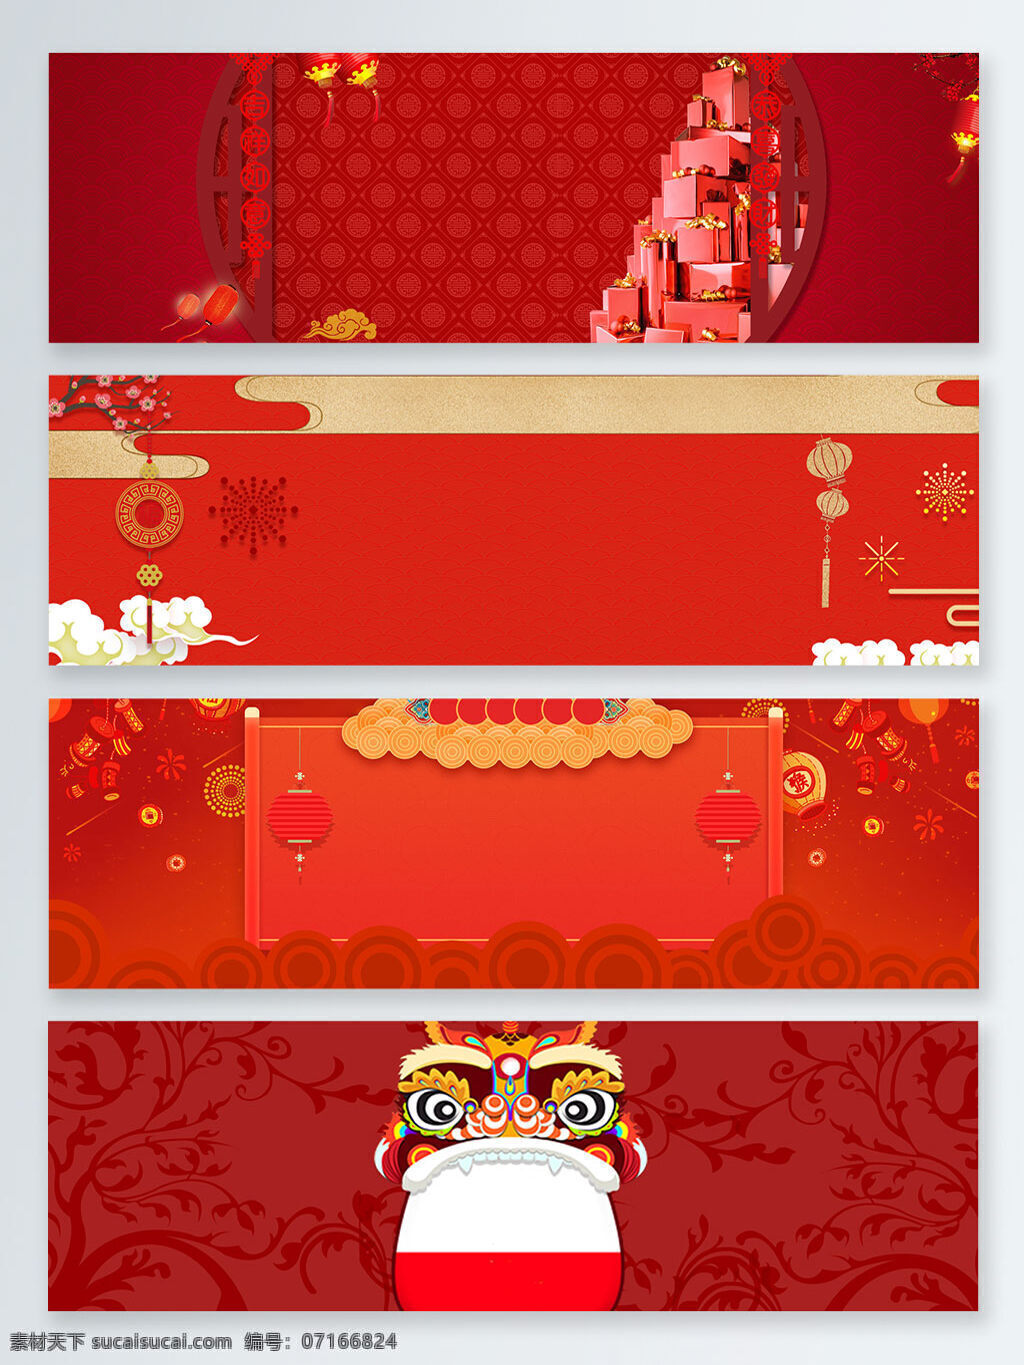 礼物 狮子 喜庆 中国 风 banner 背景 红色 几何 卡通 礼品 梅花 纹理 烟花 中国风